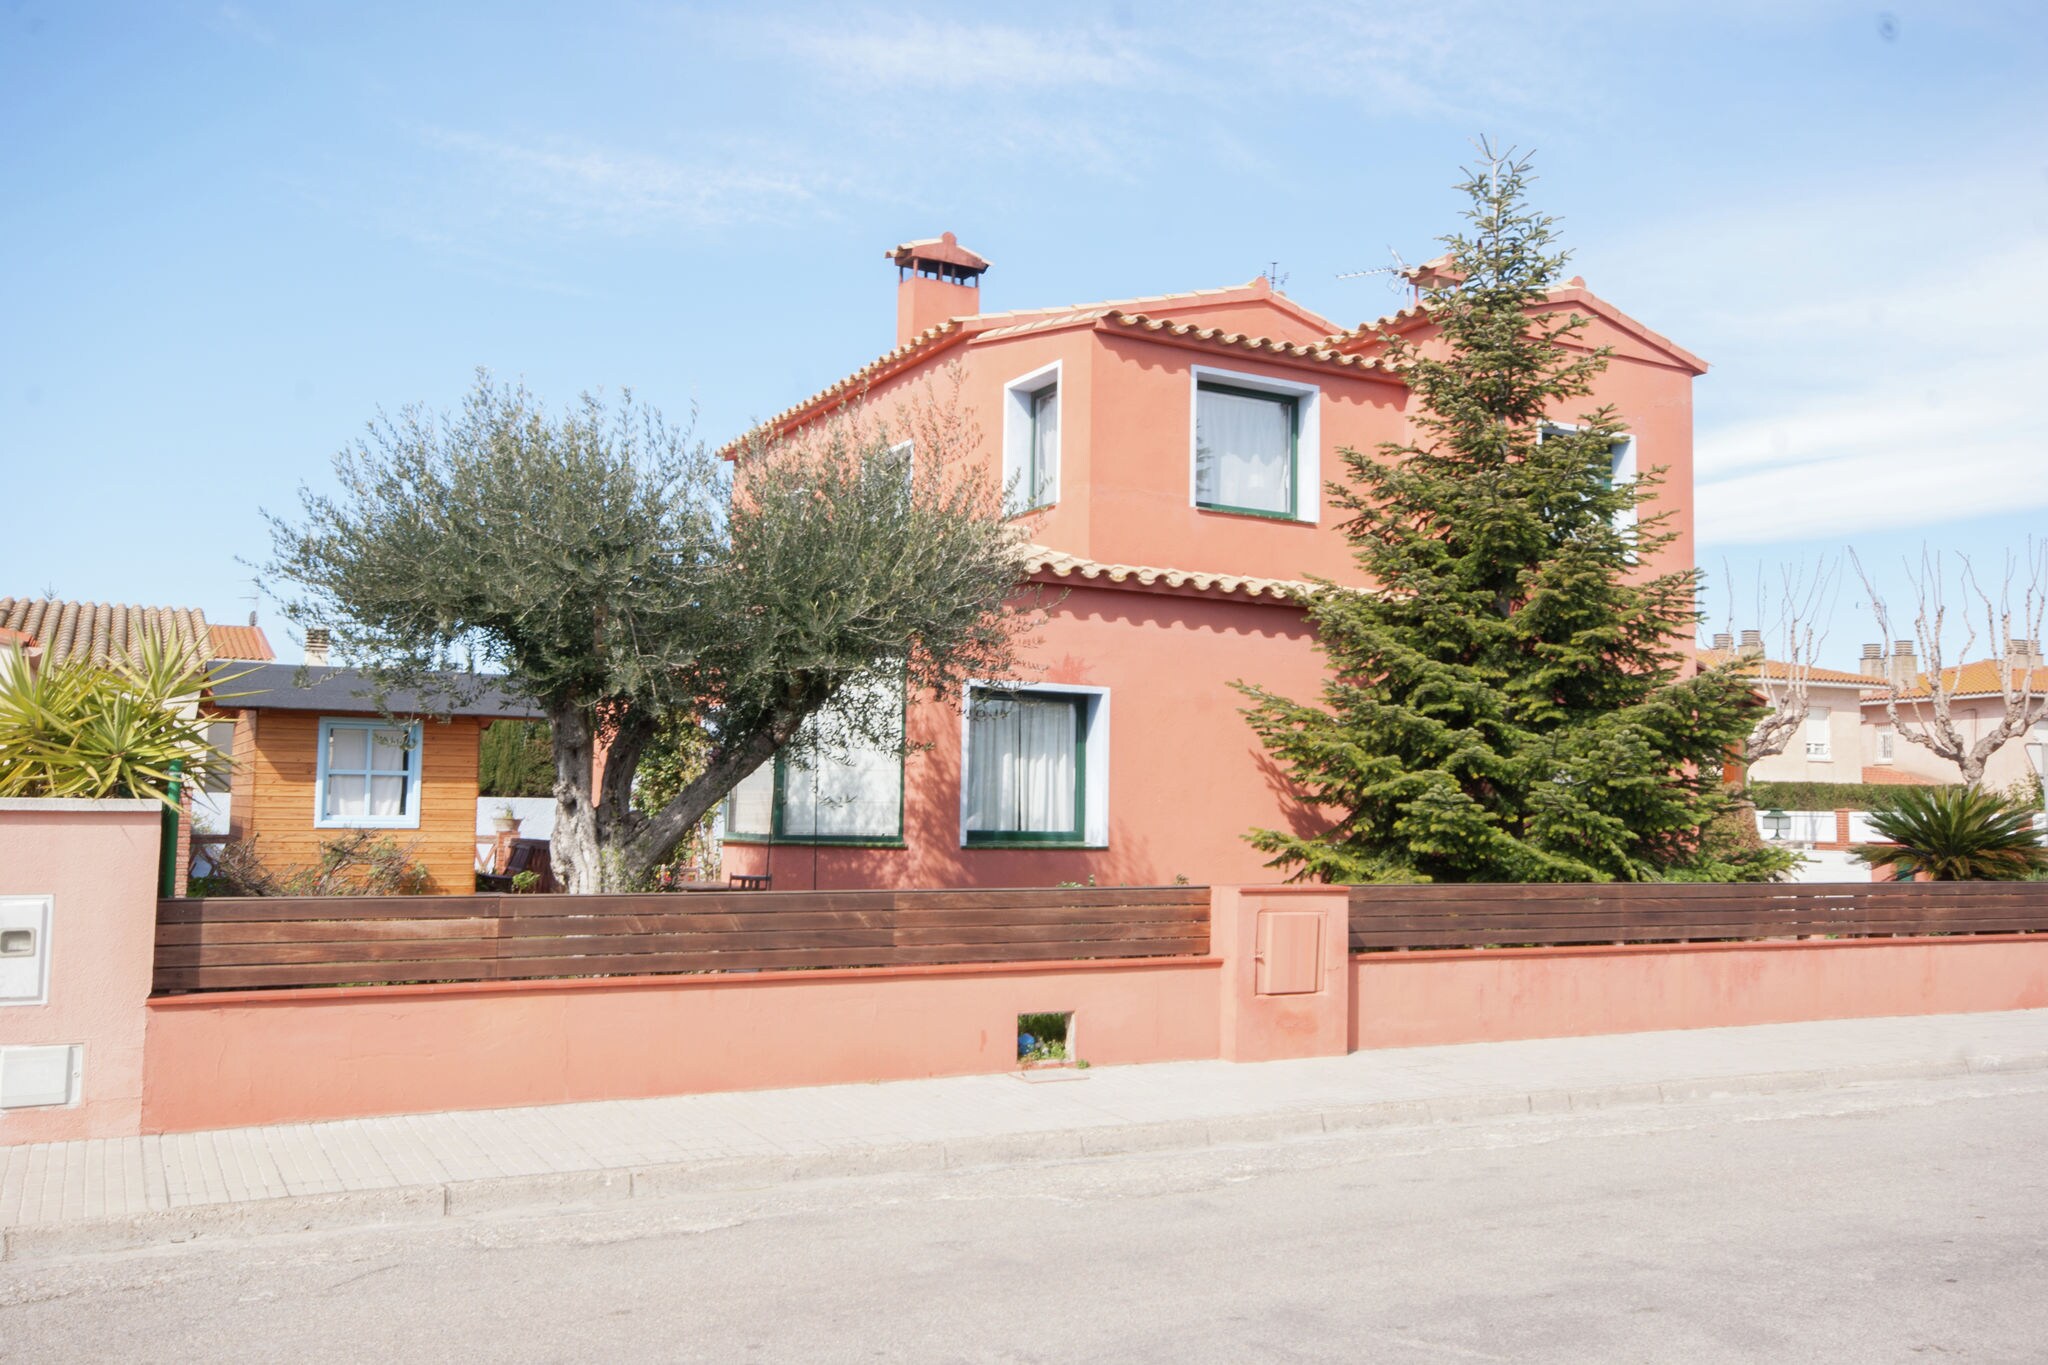 Huis met zwembad voor 5 personen in Sant Pere Pescador